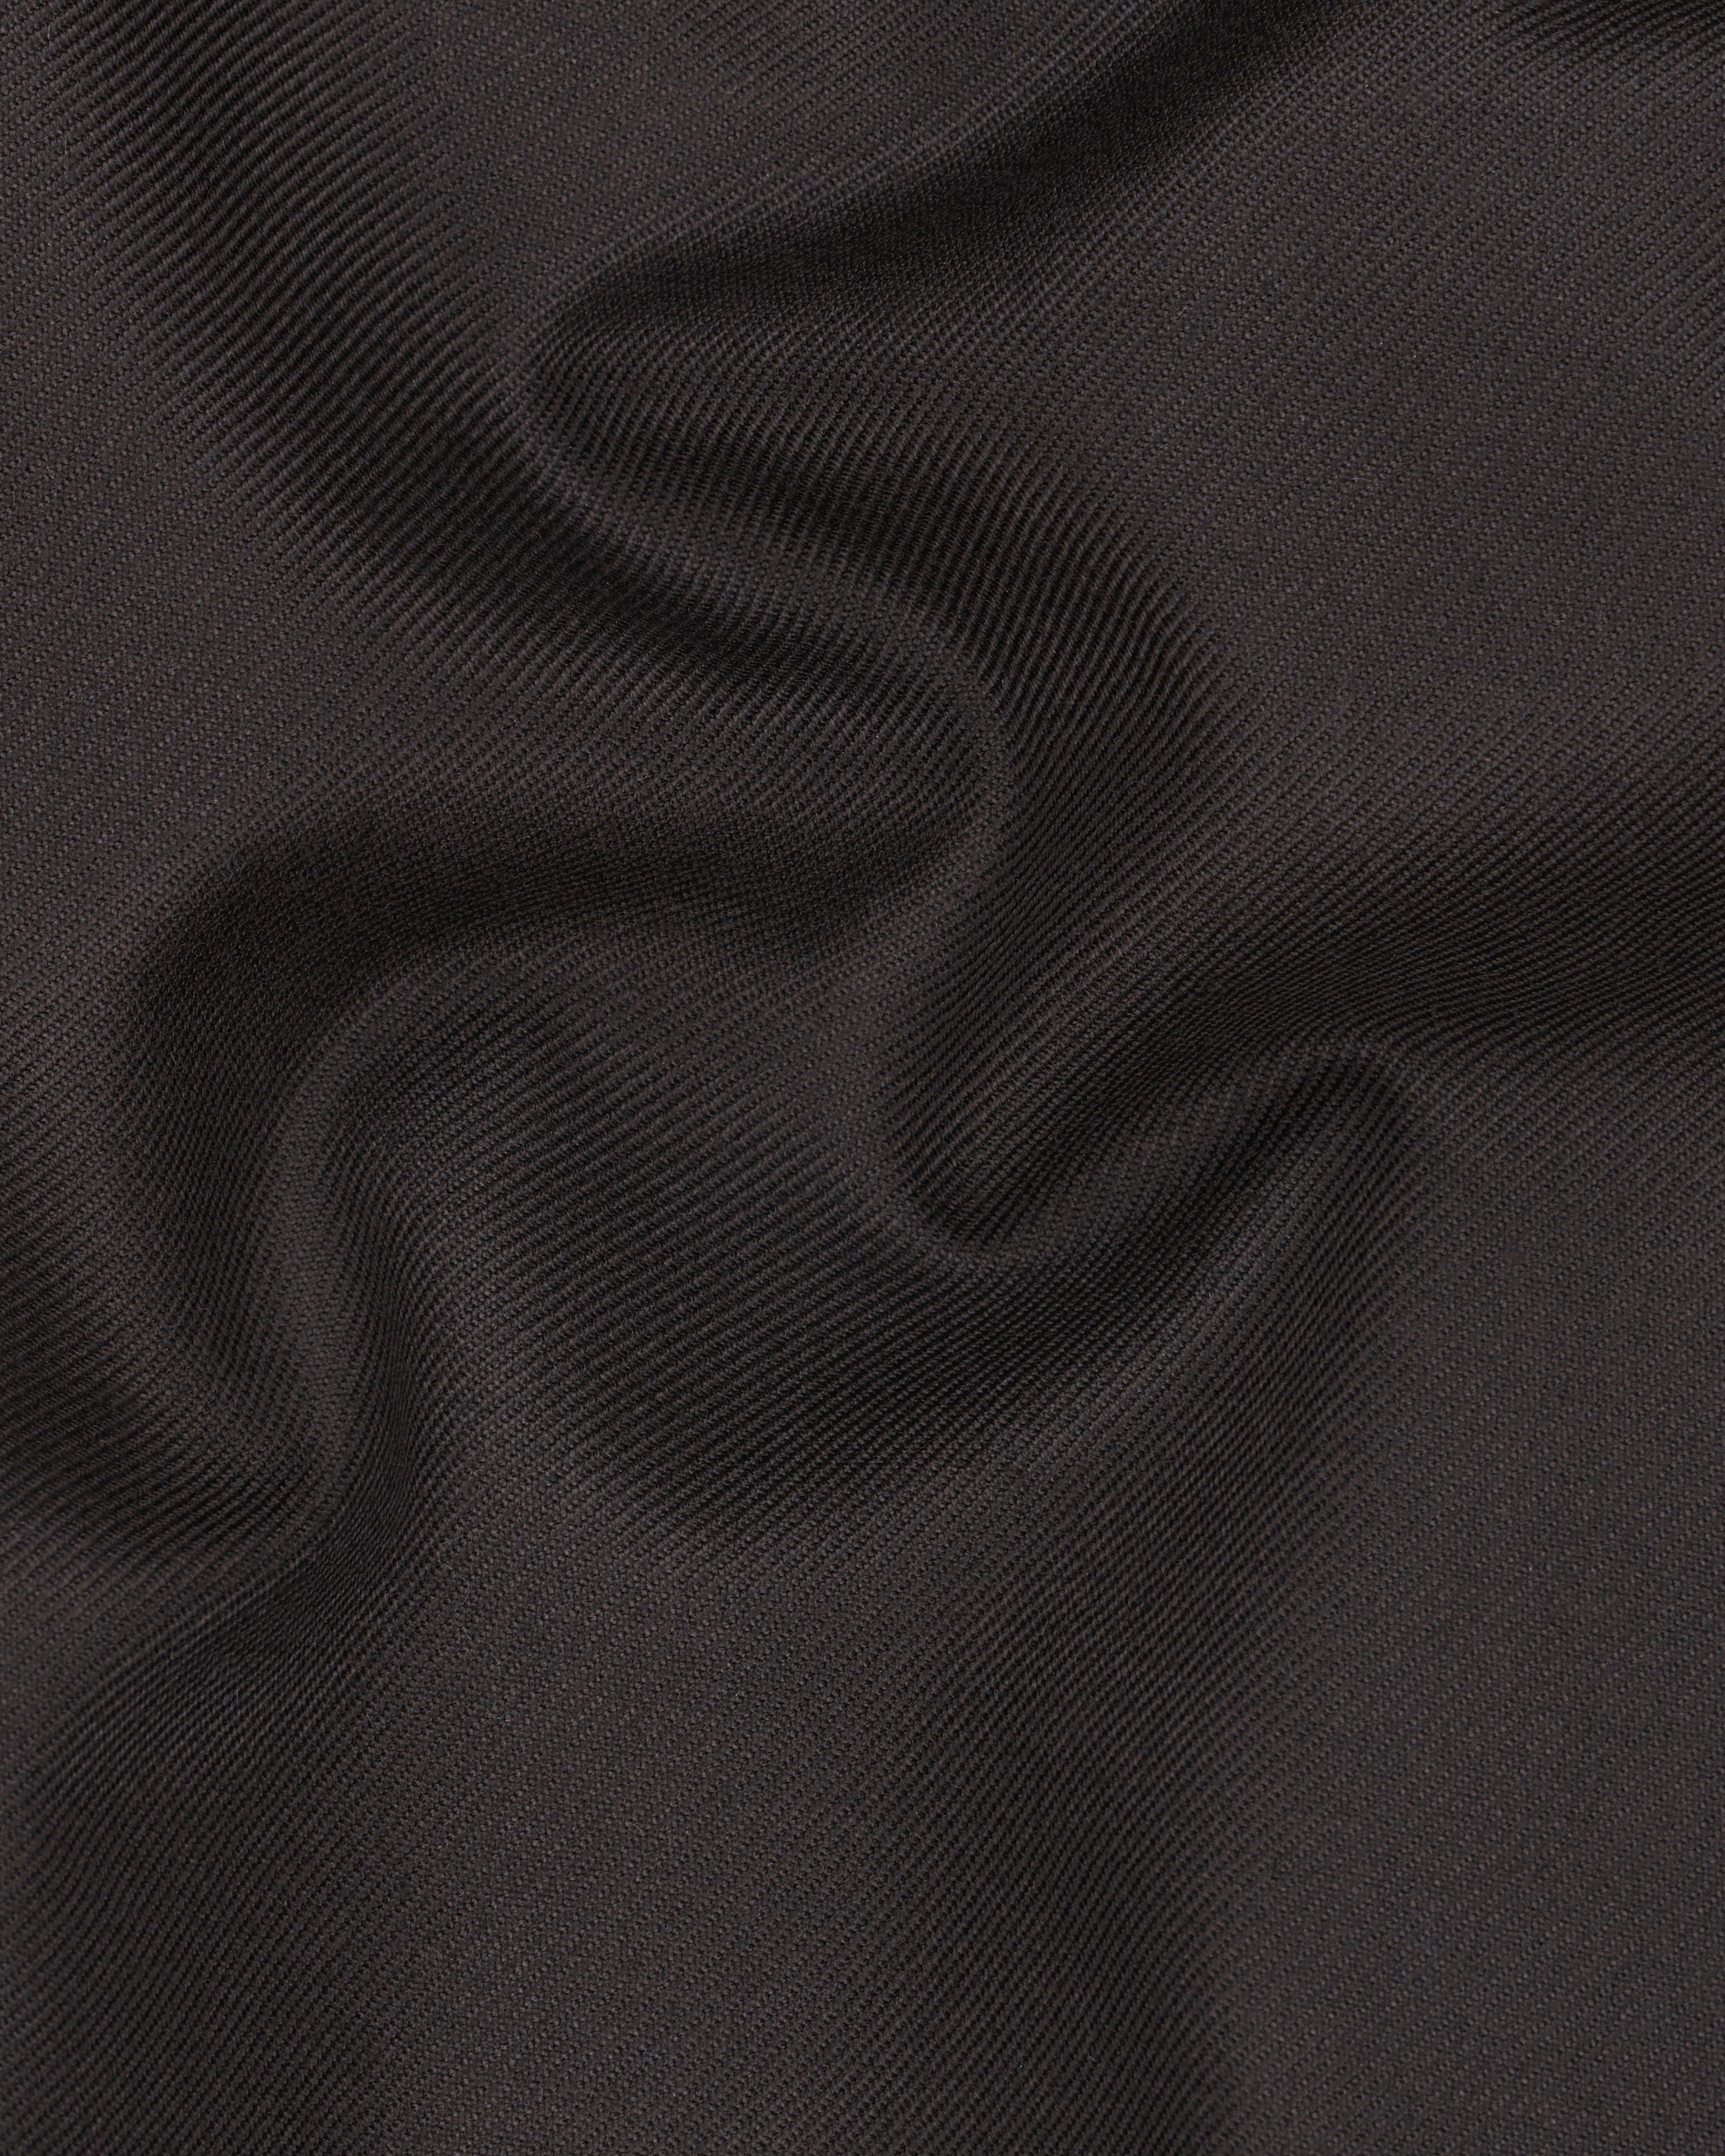 Eclipse Brown Textured Pants T2500-28, T2500-30, T2500-32, T2500-34, T2500-36, T2500-38, T2500-40, T2500-42, T2500-44